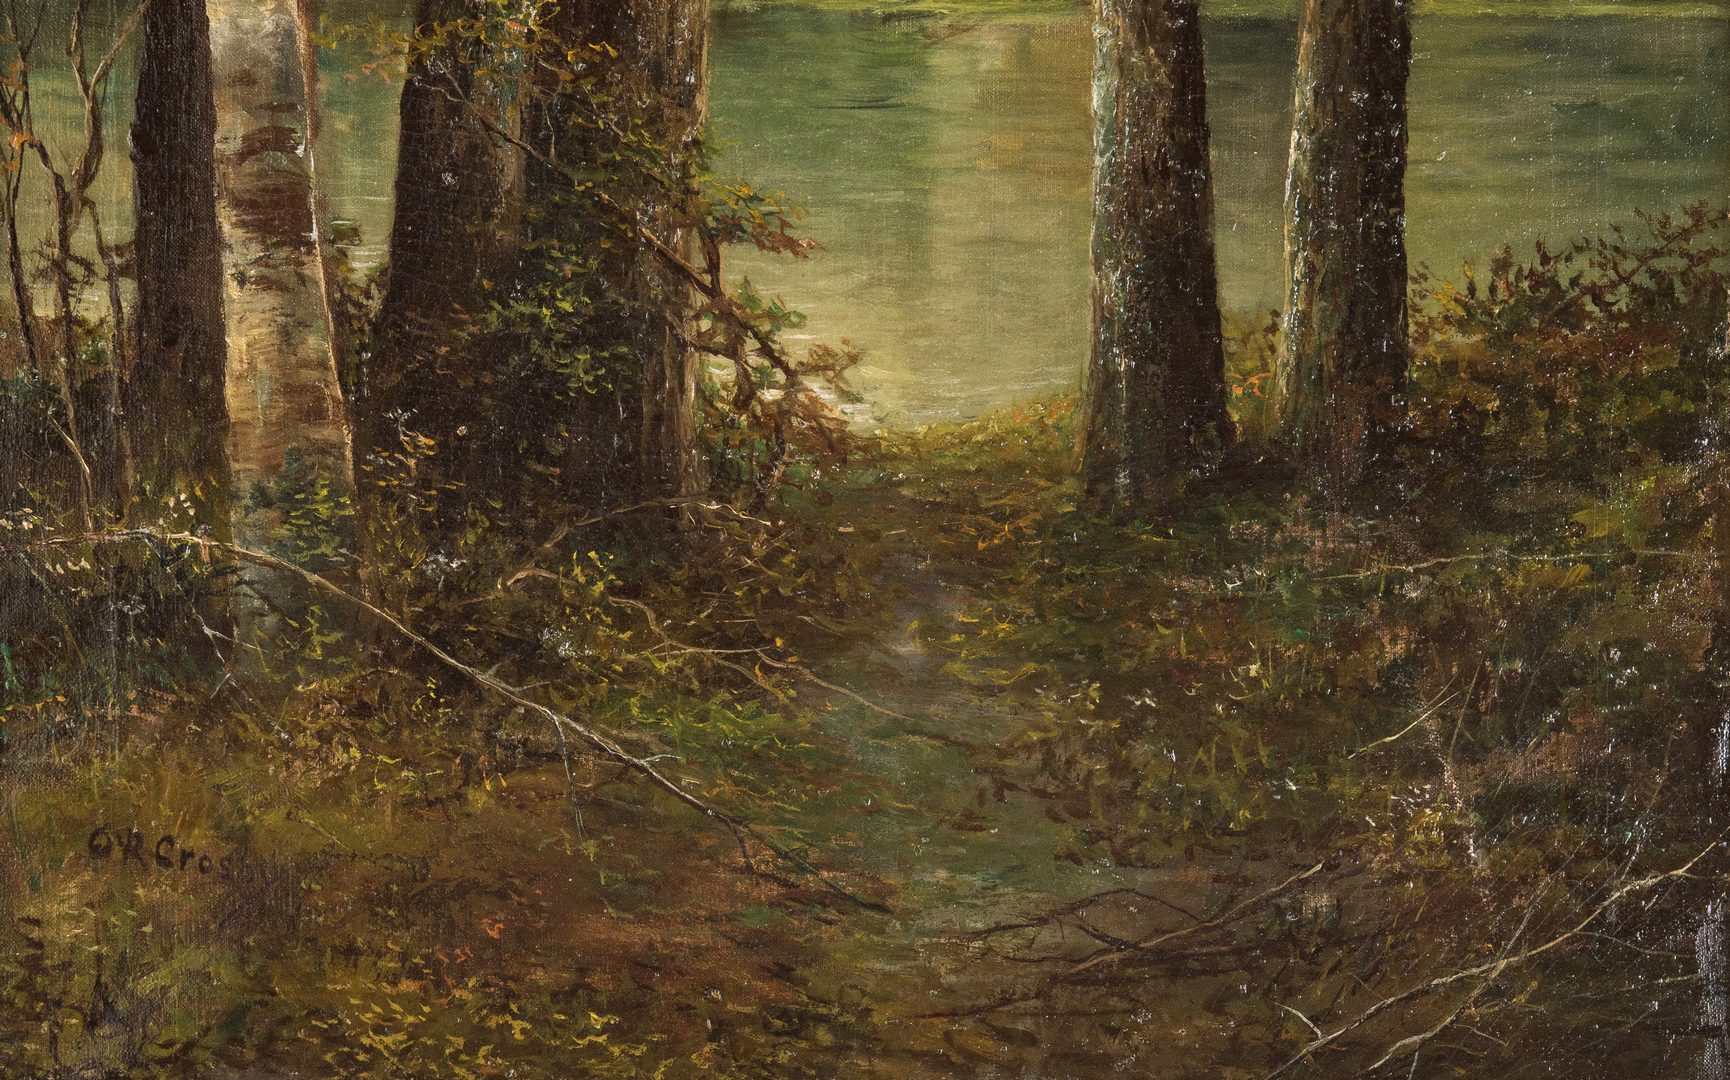 Lot 222: American 19th c. oil landscape, Crosby